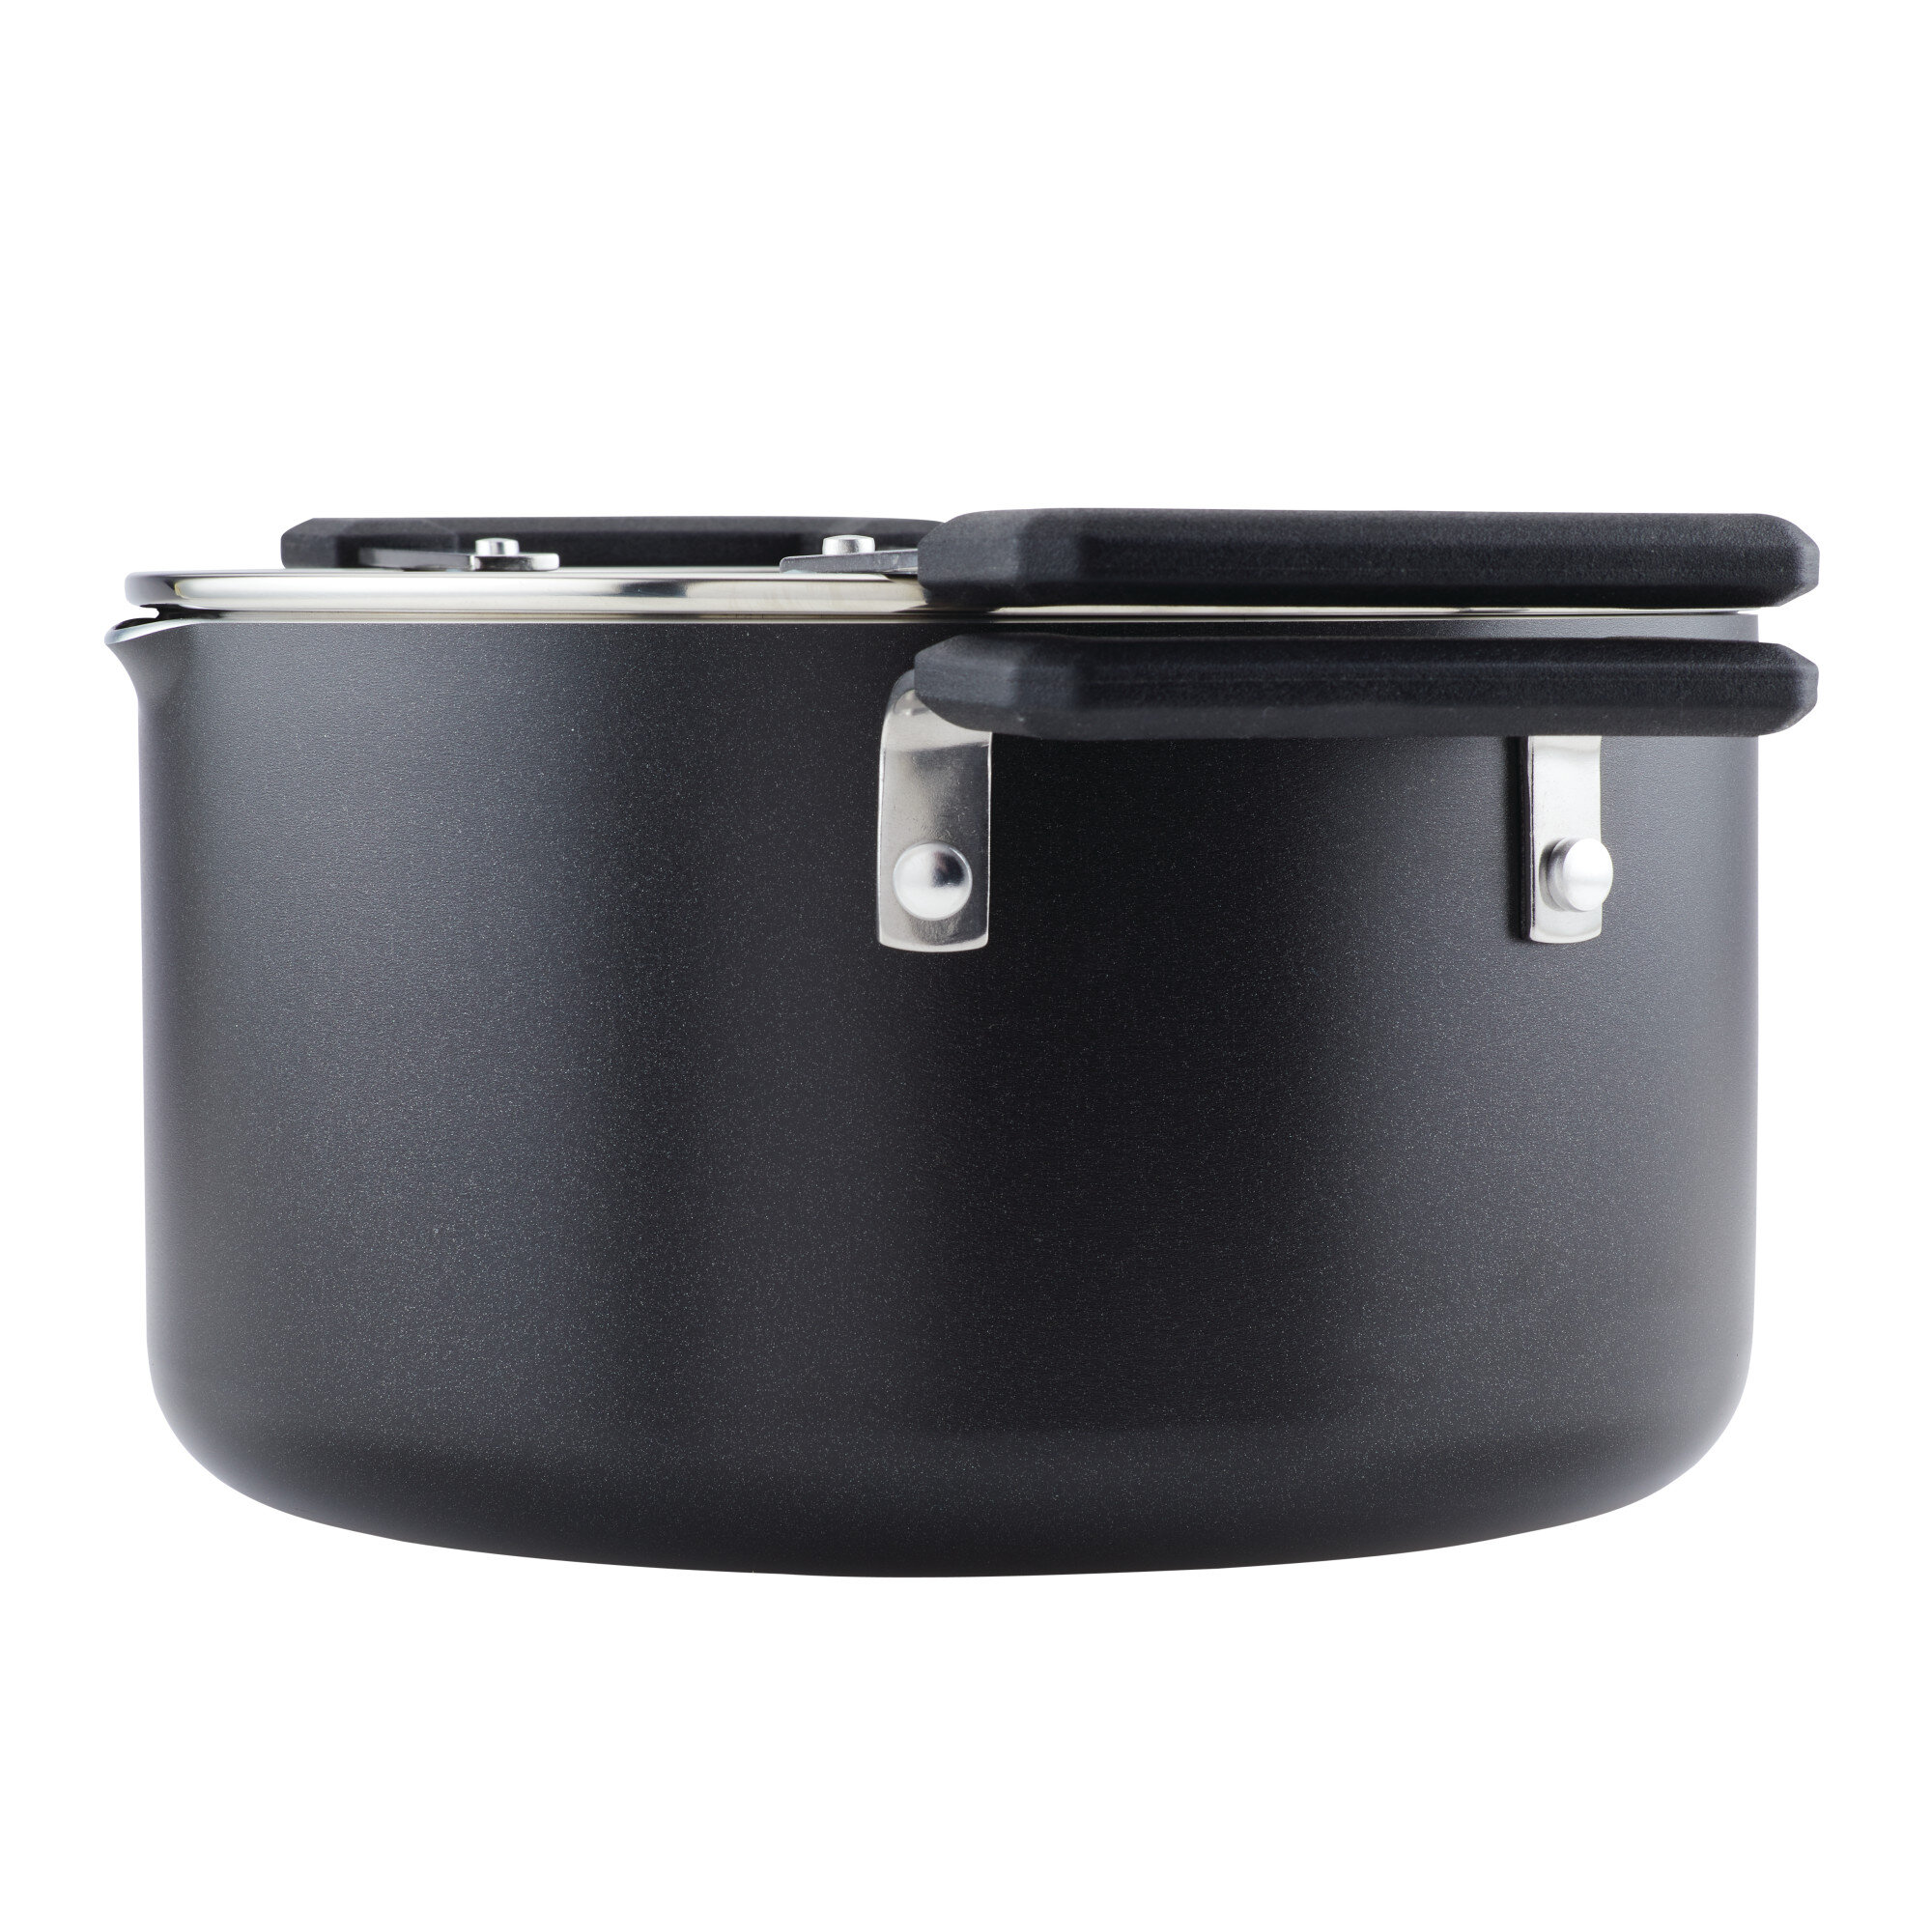 https://assets.wfcdn.com/im/41354947/compr-r85/1494/149434859/farberware-cookstart-nonstick-straining-saucepot-6-quart-black.jpg